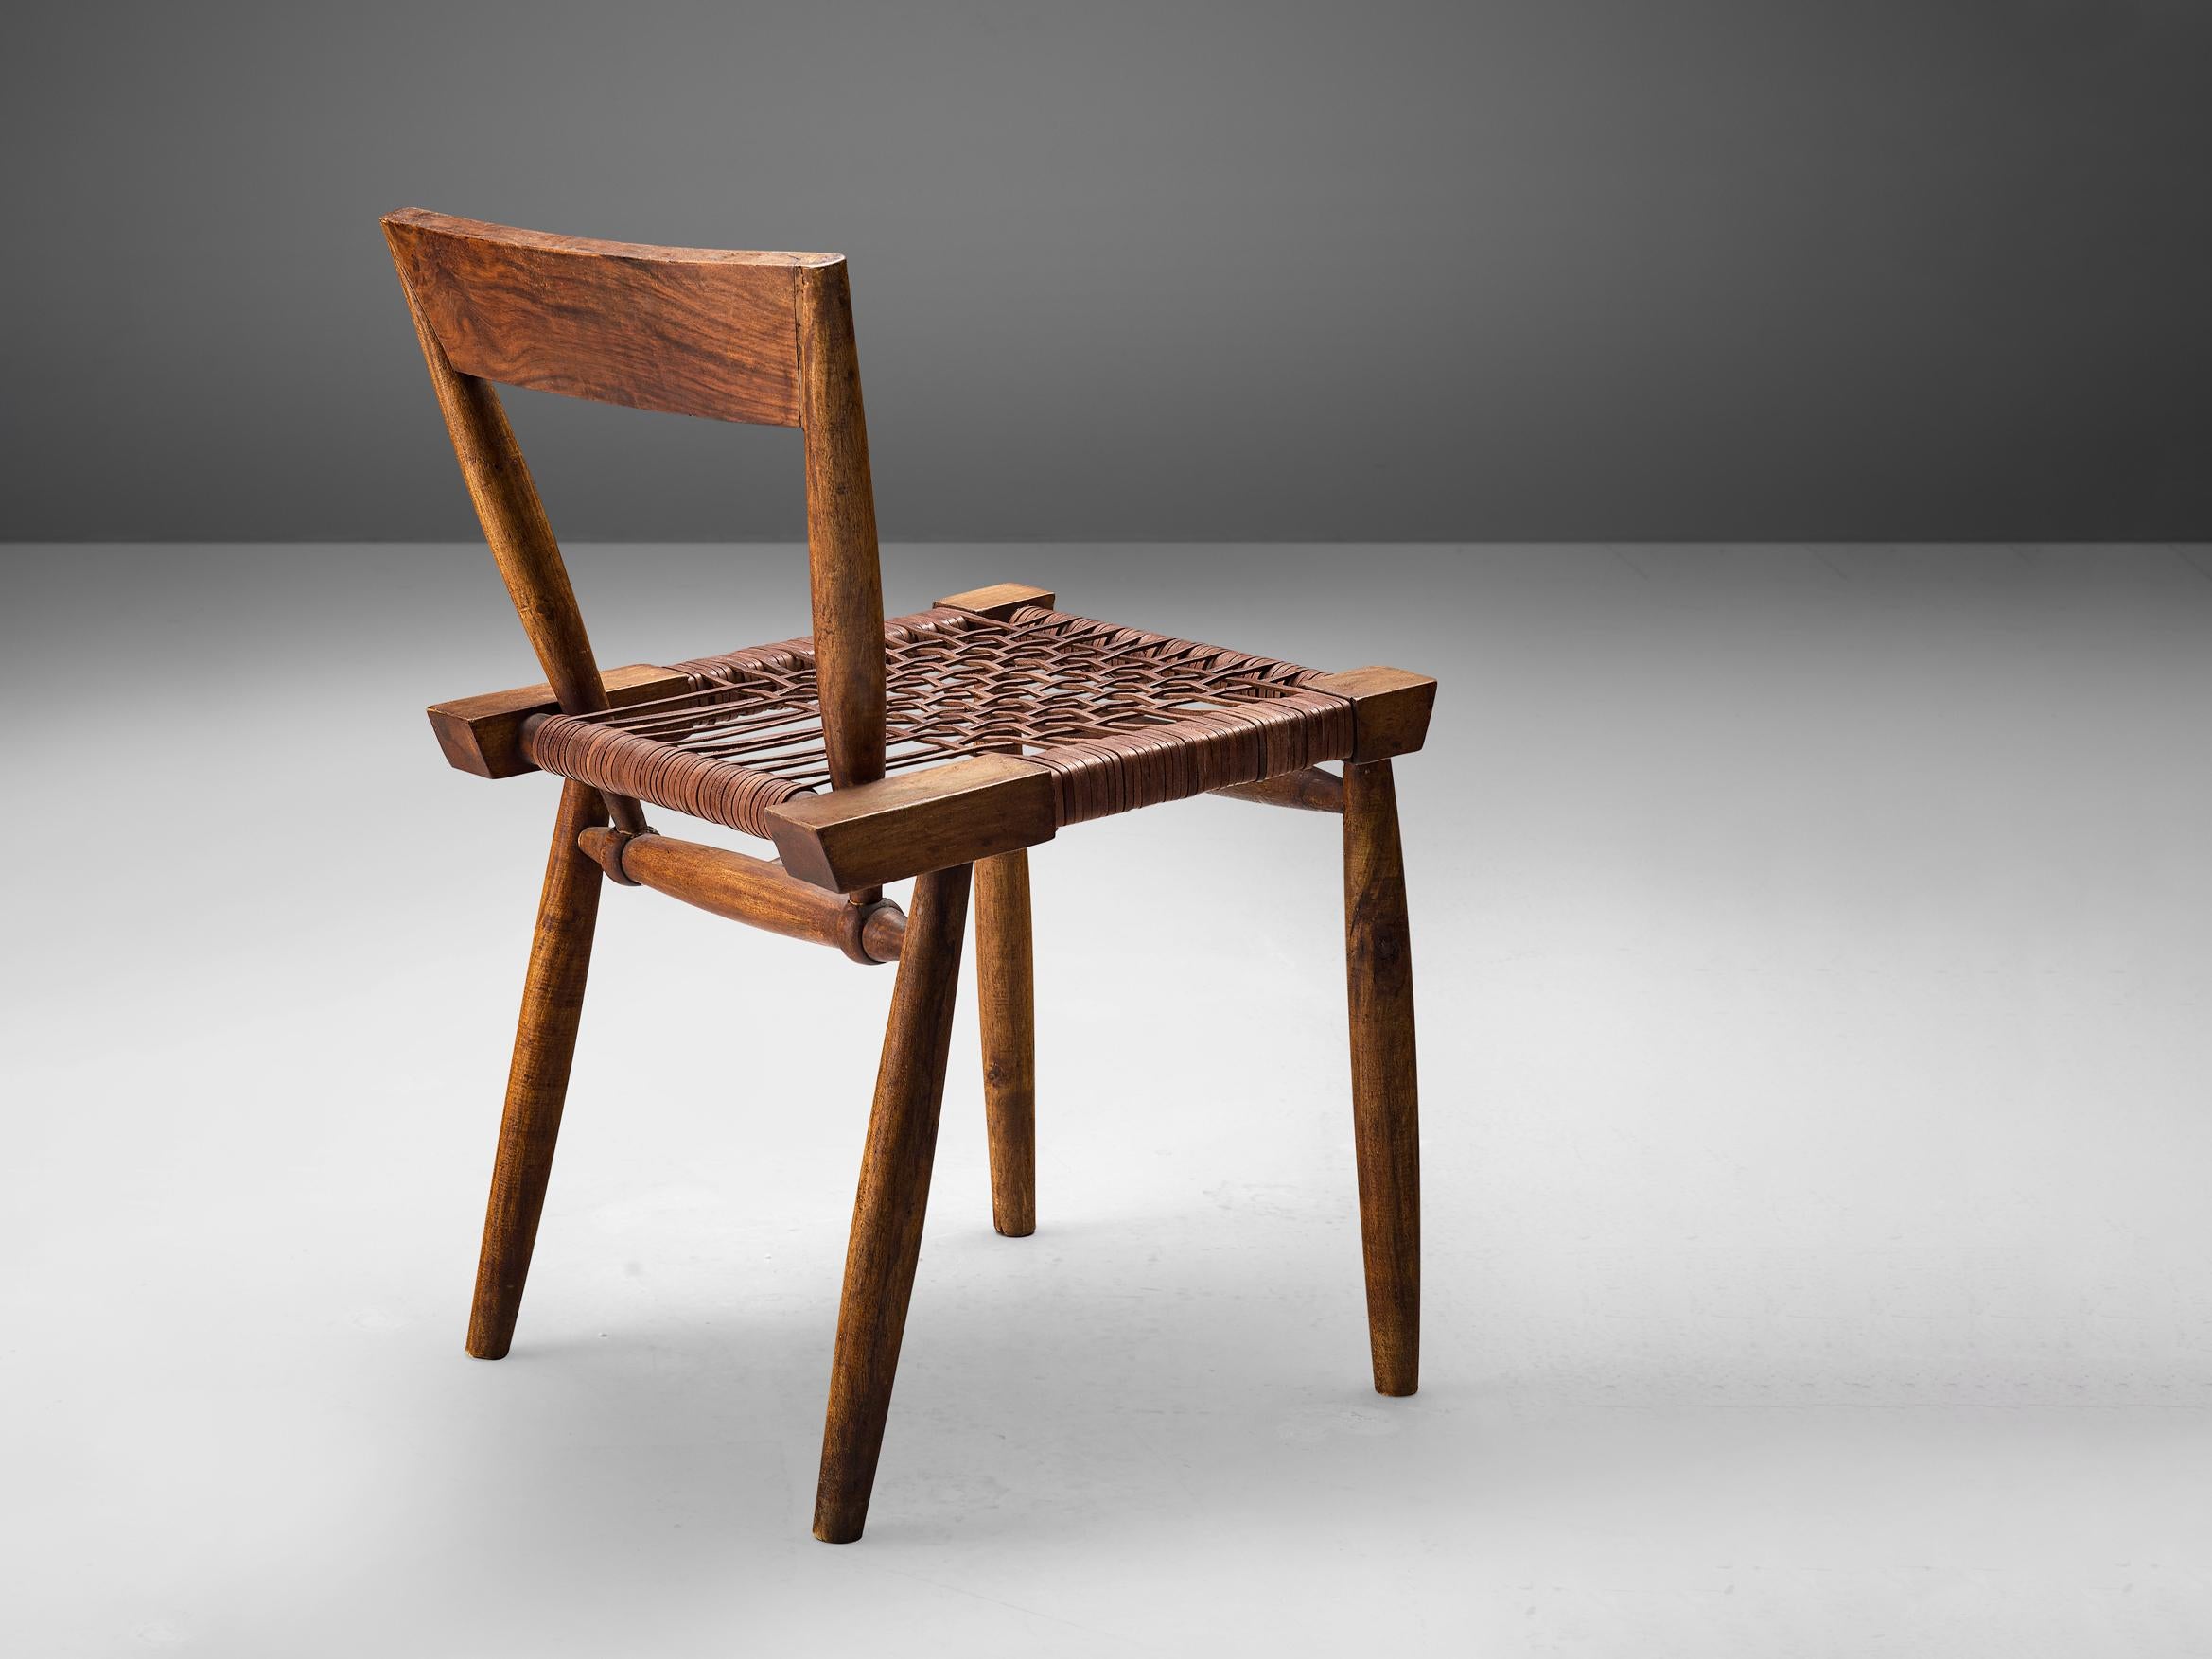 Chaise d'appoint, cuir, bois teinté, États-Unis, années 1950

Admirable chaise d'appoint artisanale des années 1950. Cette chaise se caractérise par une combinaison de formes diverses qui lui confèrent un aspect unique et merveilleux. Les parties